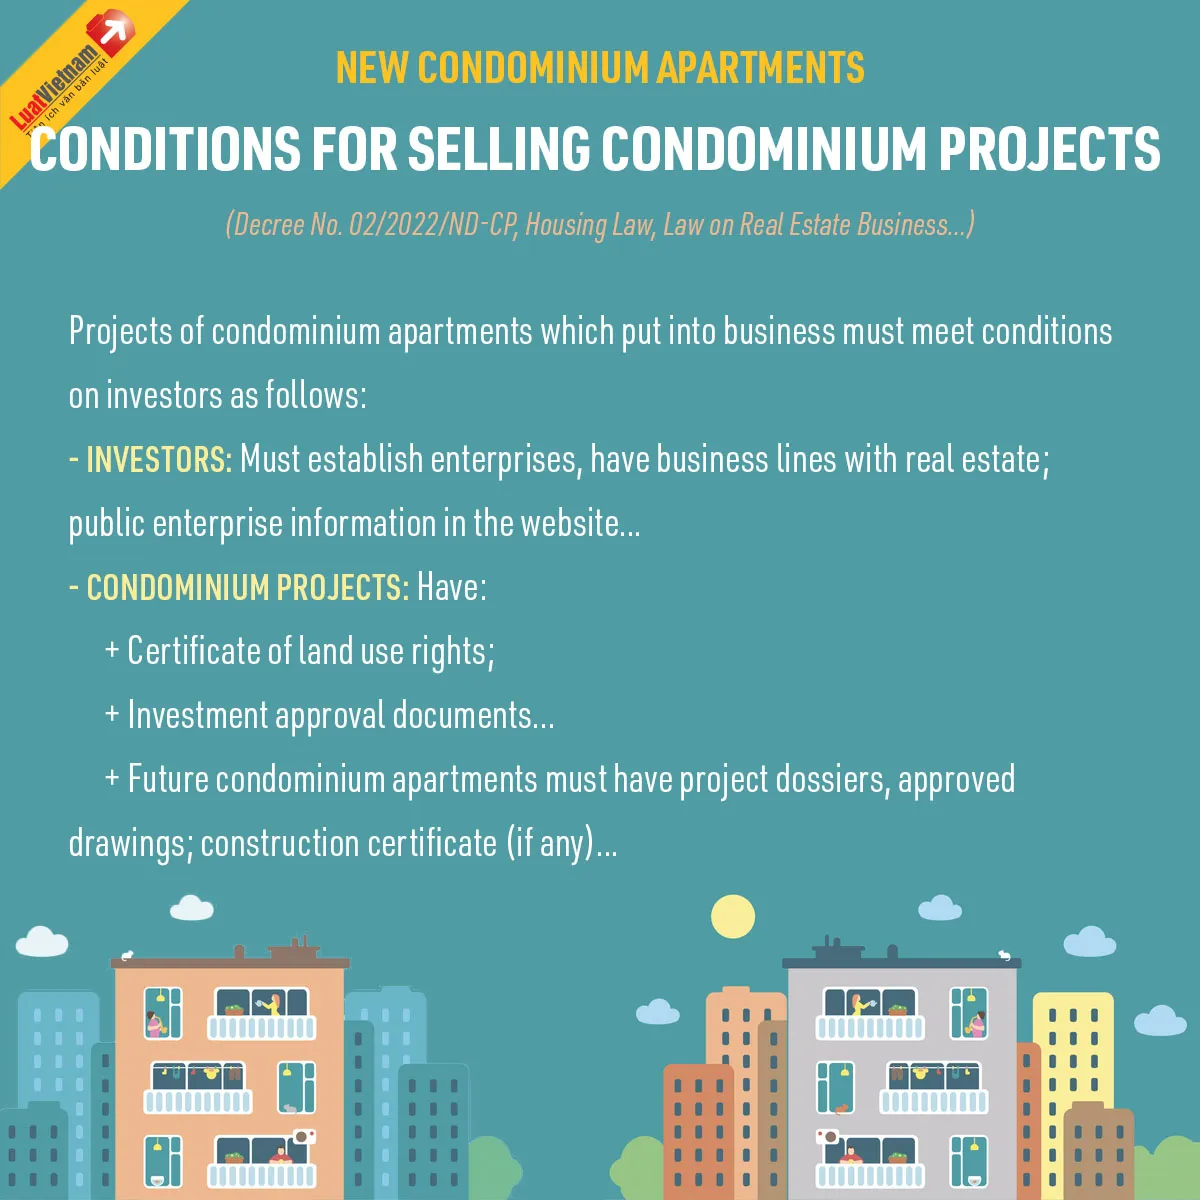 Purchase condominium apartments